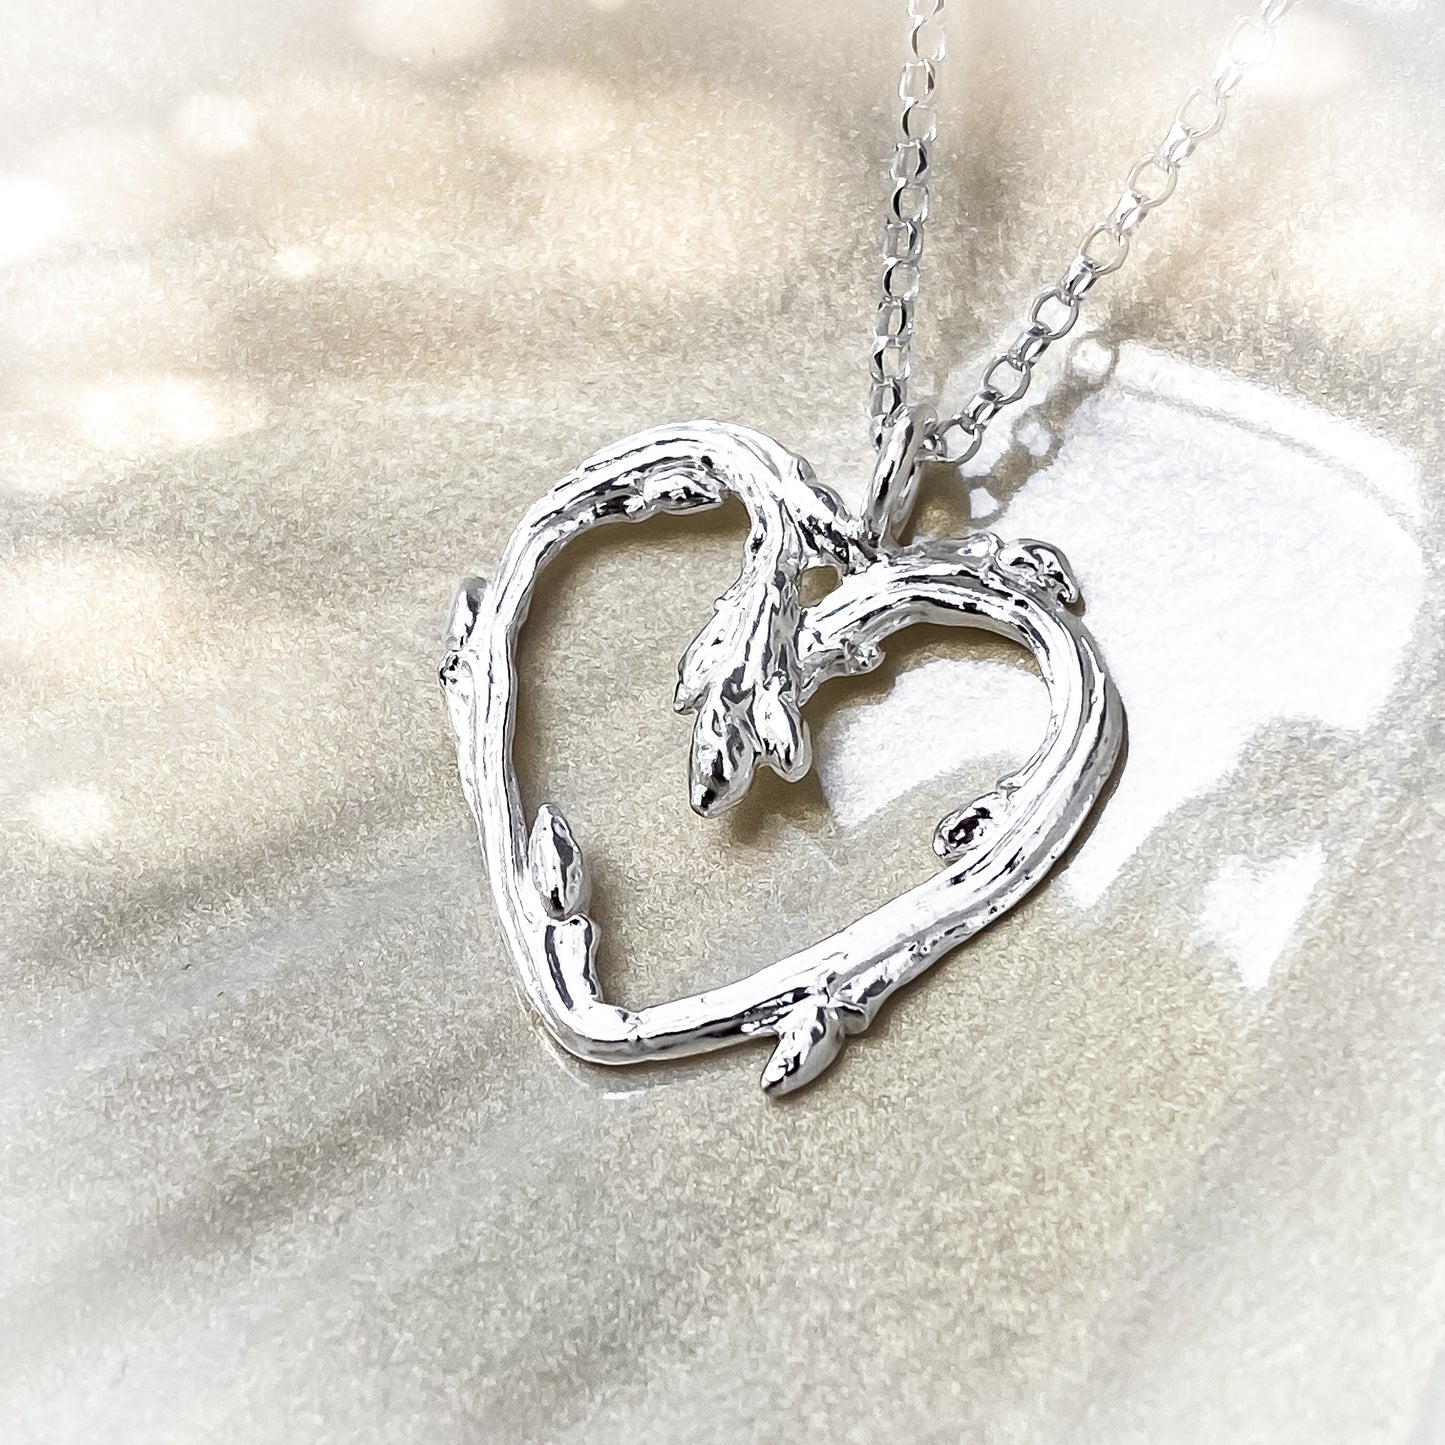 Silver Oak Twig Heart Necklace